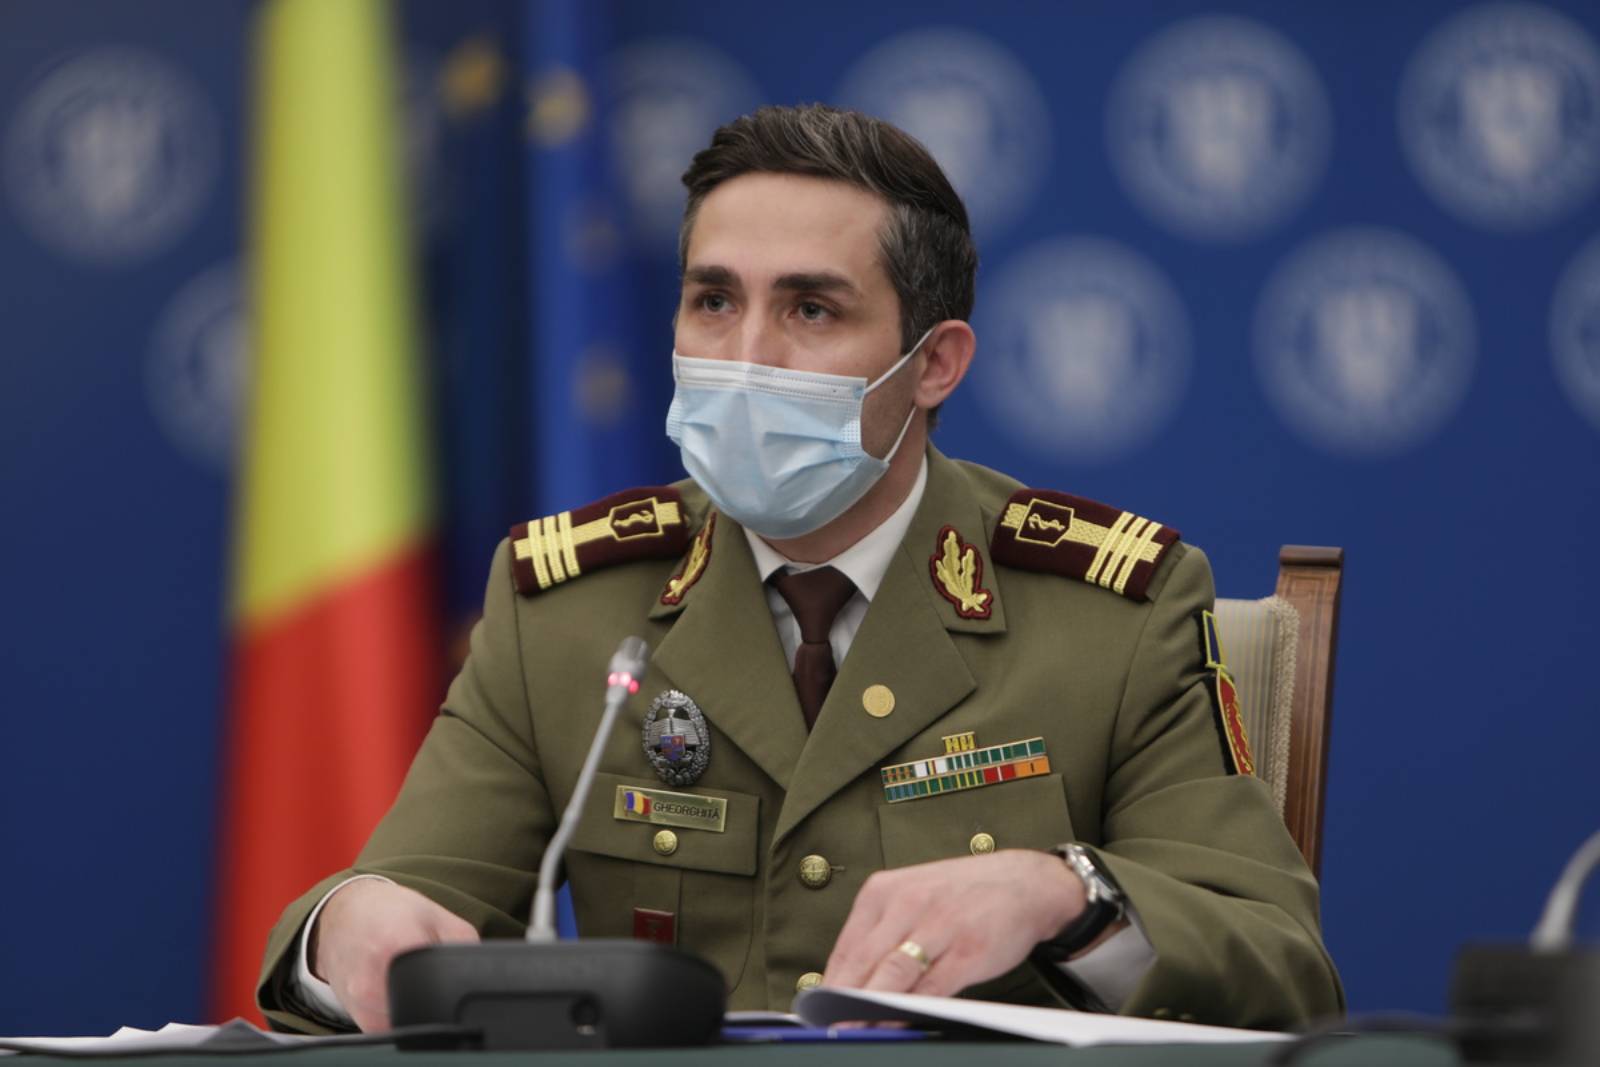 Valeriu Gheorghita Nästa vaccinationsmaraton i Bukarest, rädsla för rumänerna